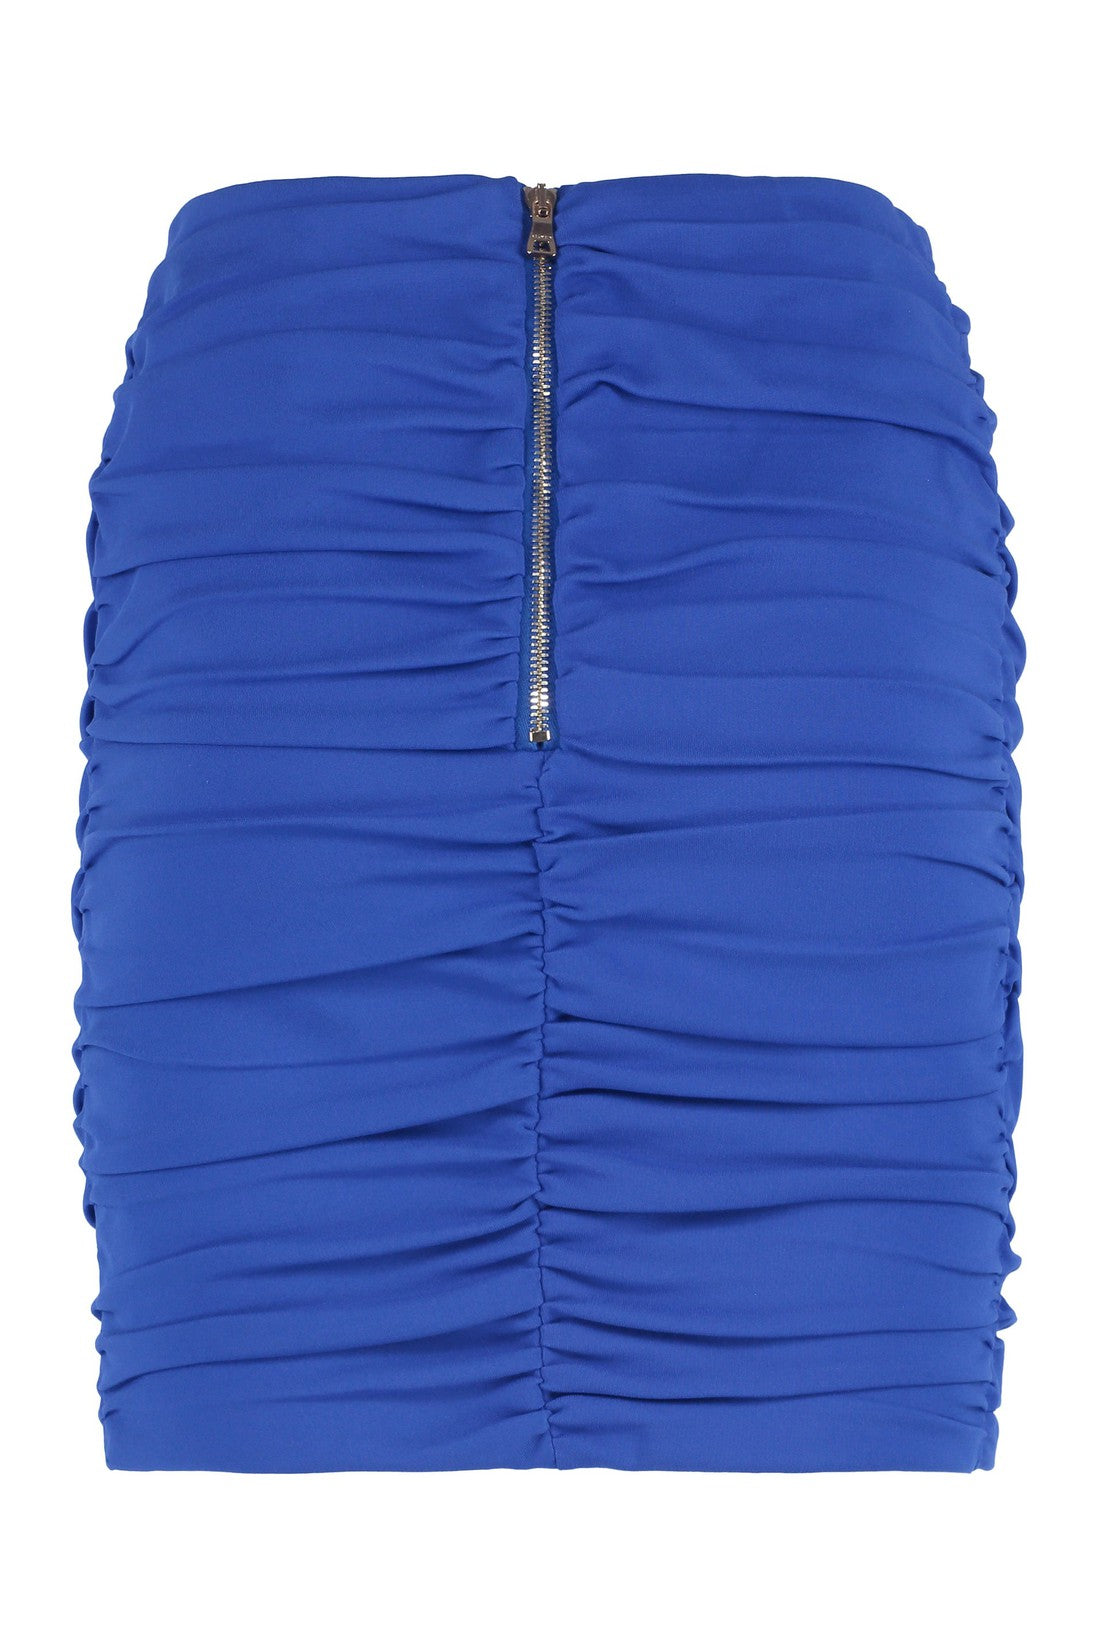 Balmain-OUTLET-SALE-Draped skirt-ARCHIVIST